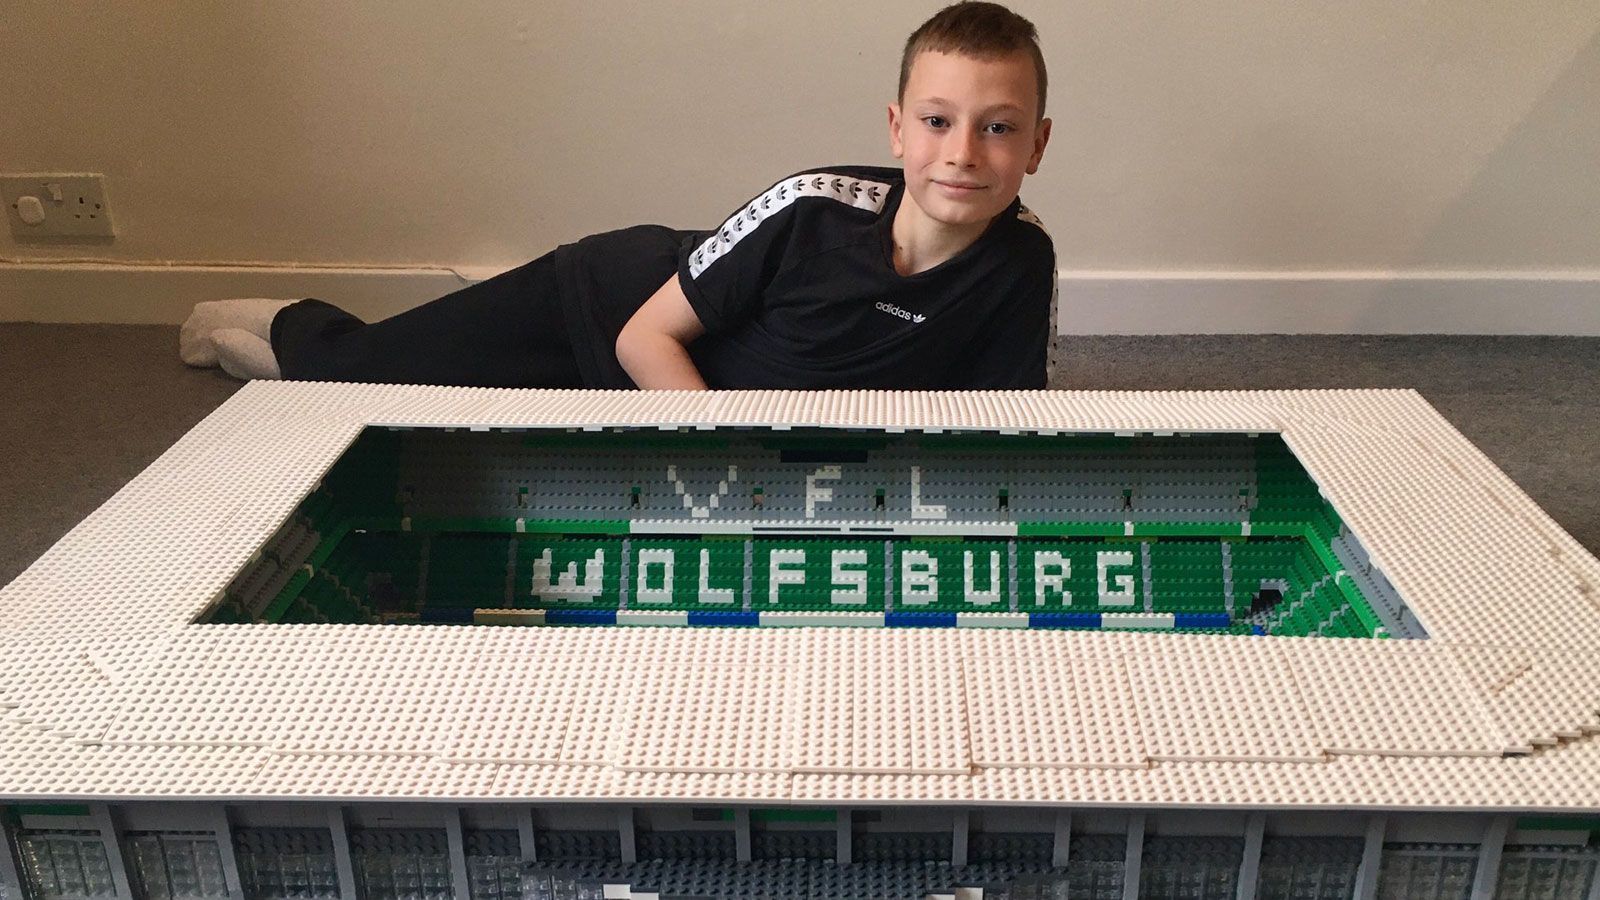 
                <strong>VfL Wolfsburg</strong><br>
                Auch der VfL Wolfsburg freut sich über ein Duplikat seines Stadions: "Unsere Volkswagen-Arena aus Lego - tolle Arbeit, Joe", schrieb der Klub via Twitter.
              